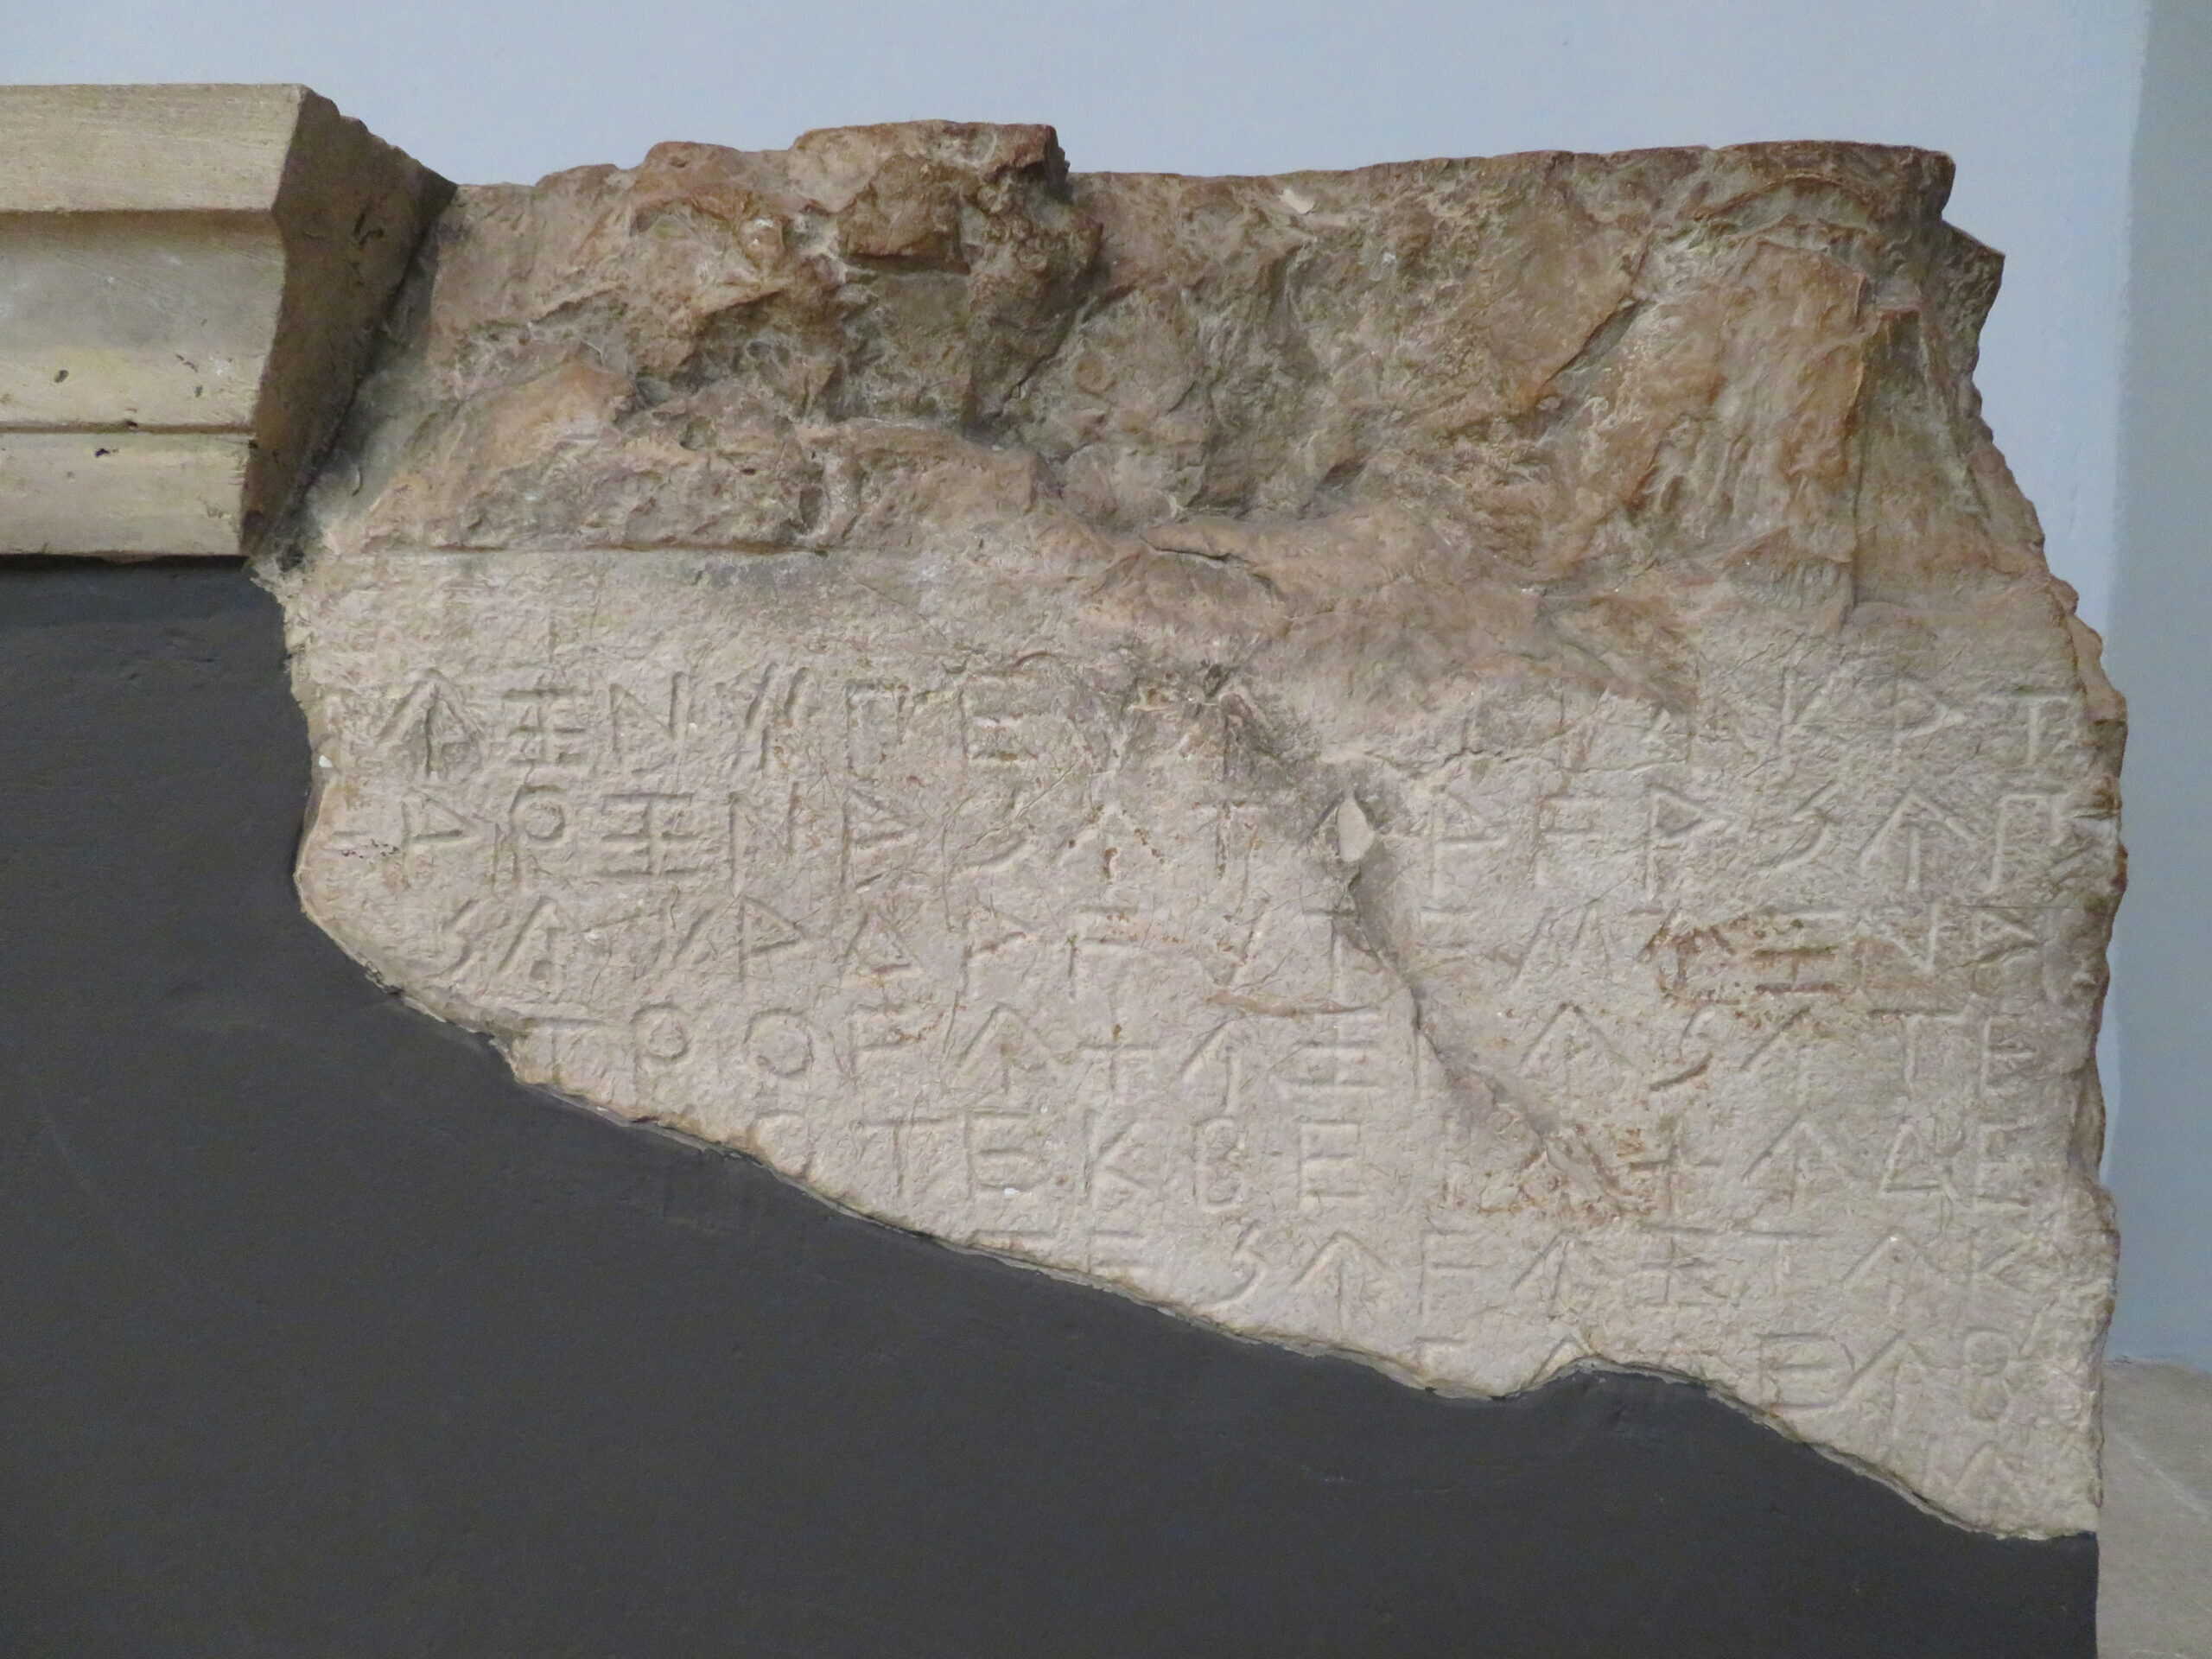 Lycian script